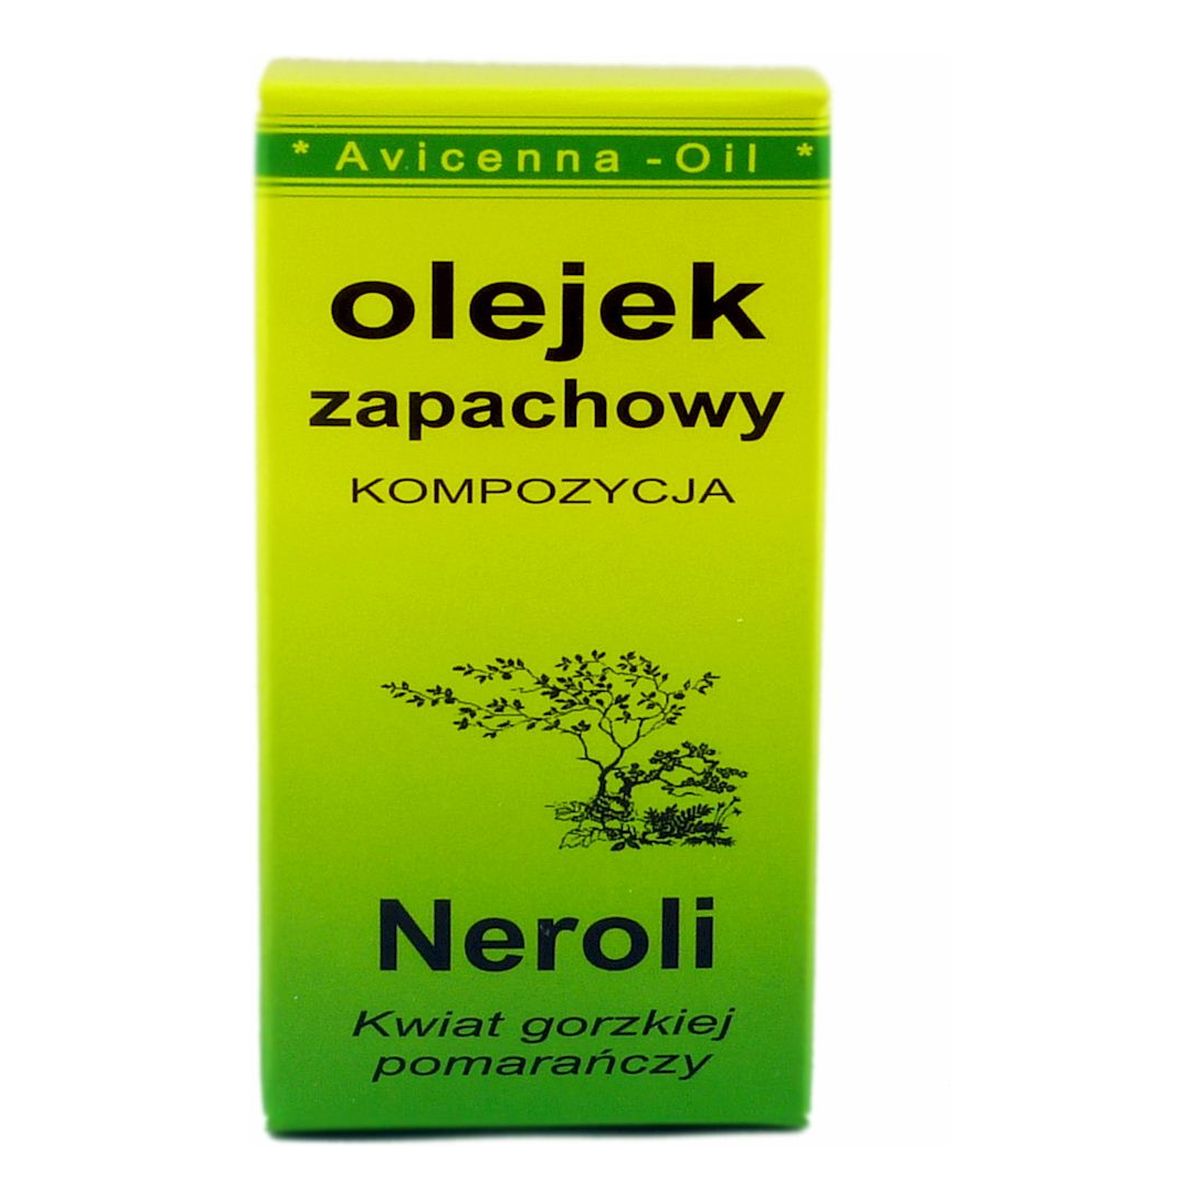 Avicenna-Oil Olejek Zapachowy kompozycja Neroli 7ml